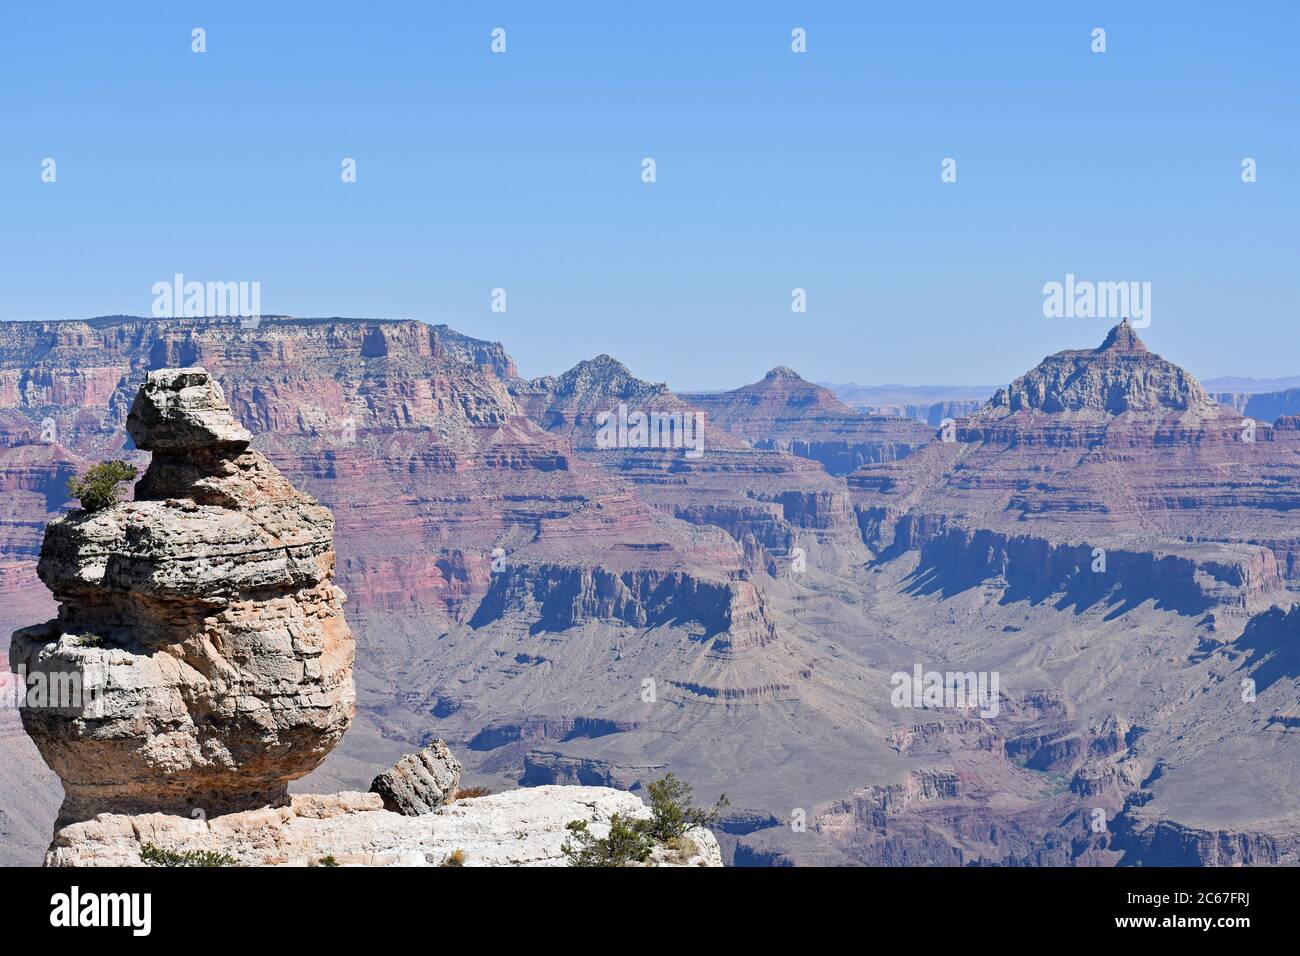 Un pullout lungo Desert View Drive per vedere la formazione: Anatra su una roccia. Il Grand Canyon può essere visto sullo sfondo. Cielo blu chiaro e roccia rossa Foto Stock